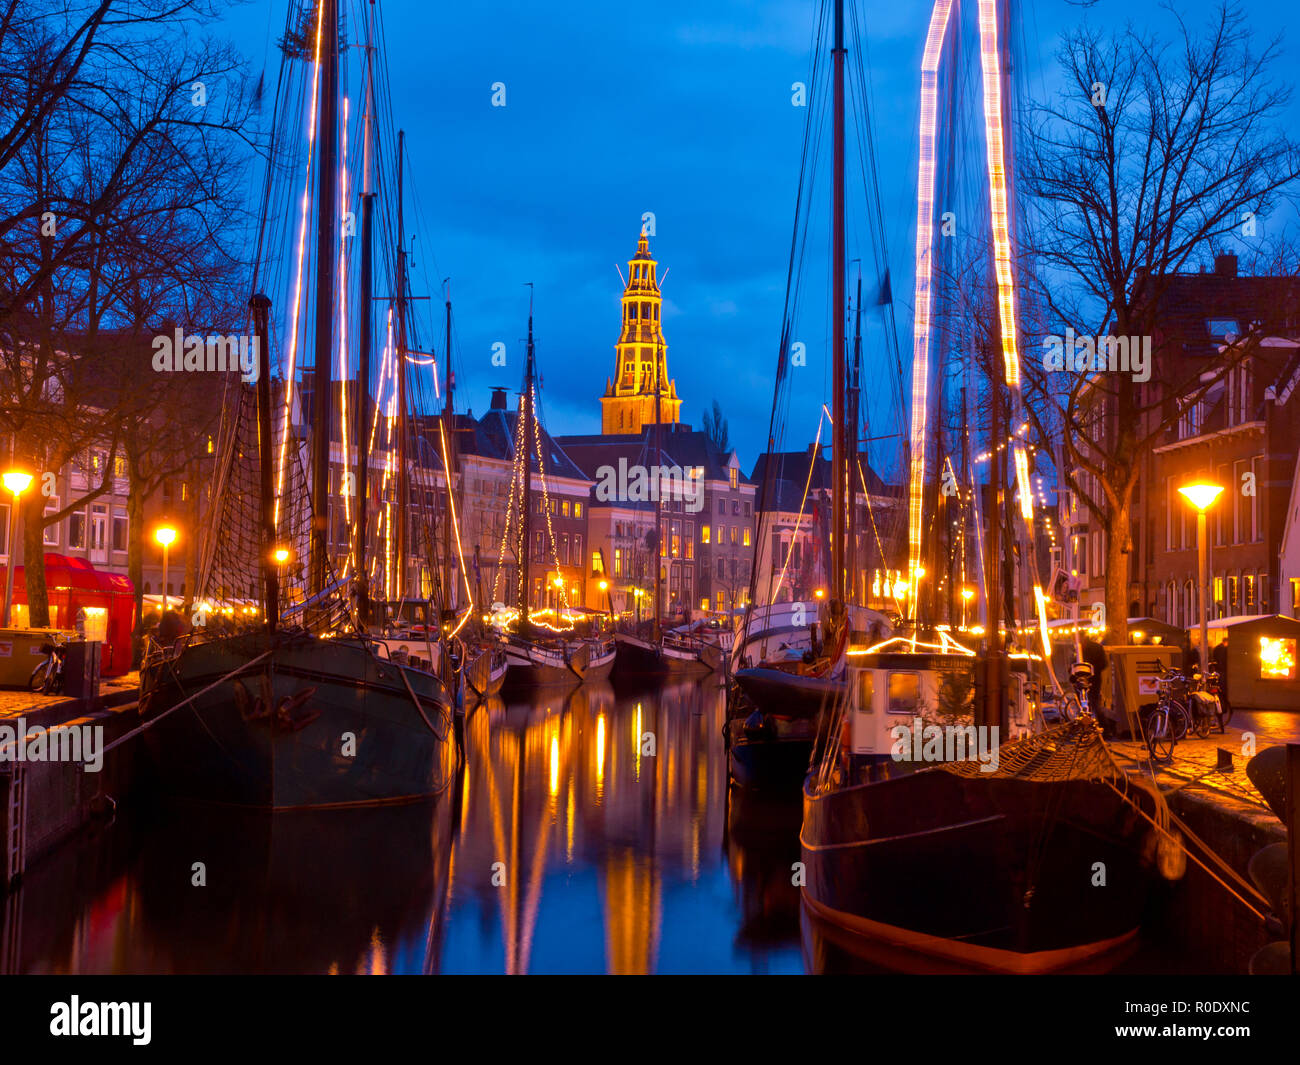 Les bateaux à voile vieille illuminée la nuit pendant l'événement Winterwelvaart à Groningen, Pays-Bas Banque D'Images